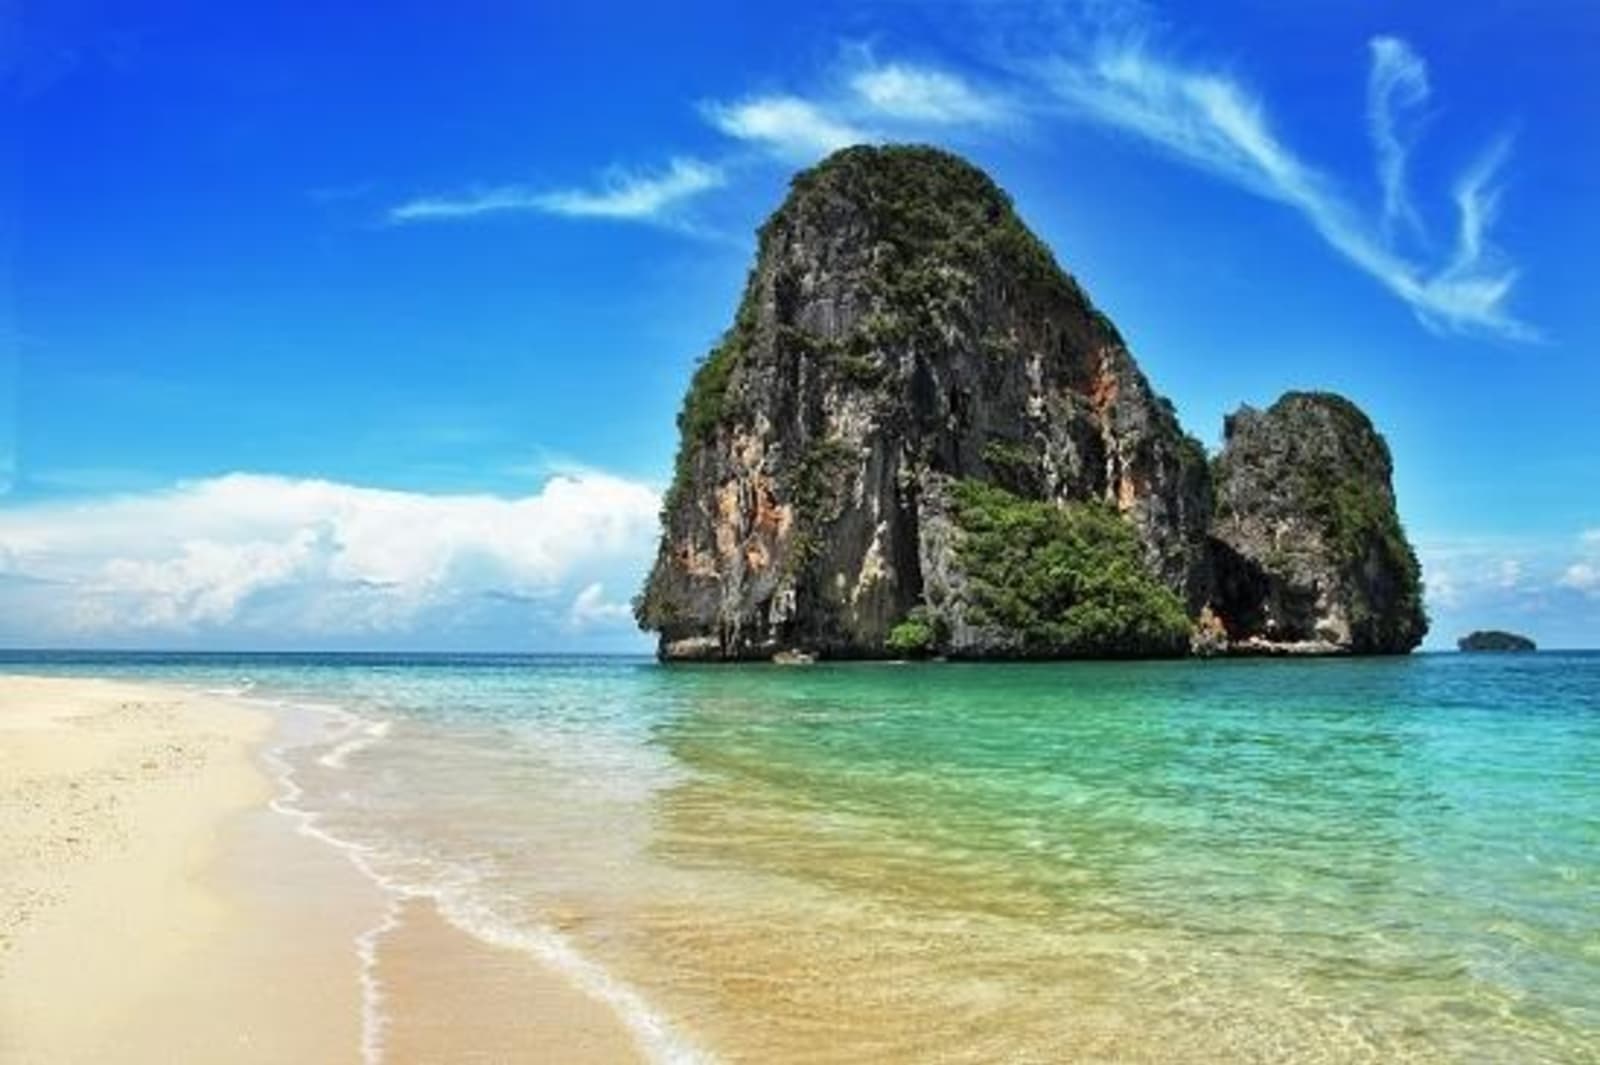 Railay-beach-in-Krabi-Thailand.jpeg